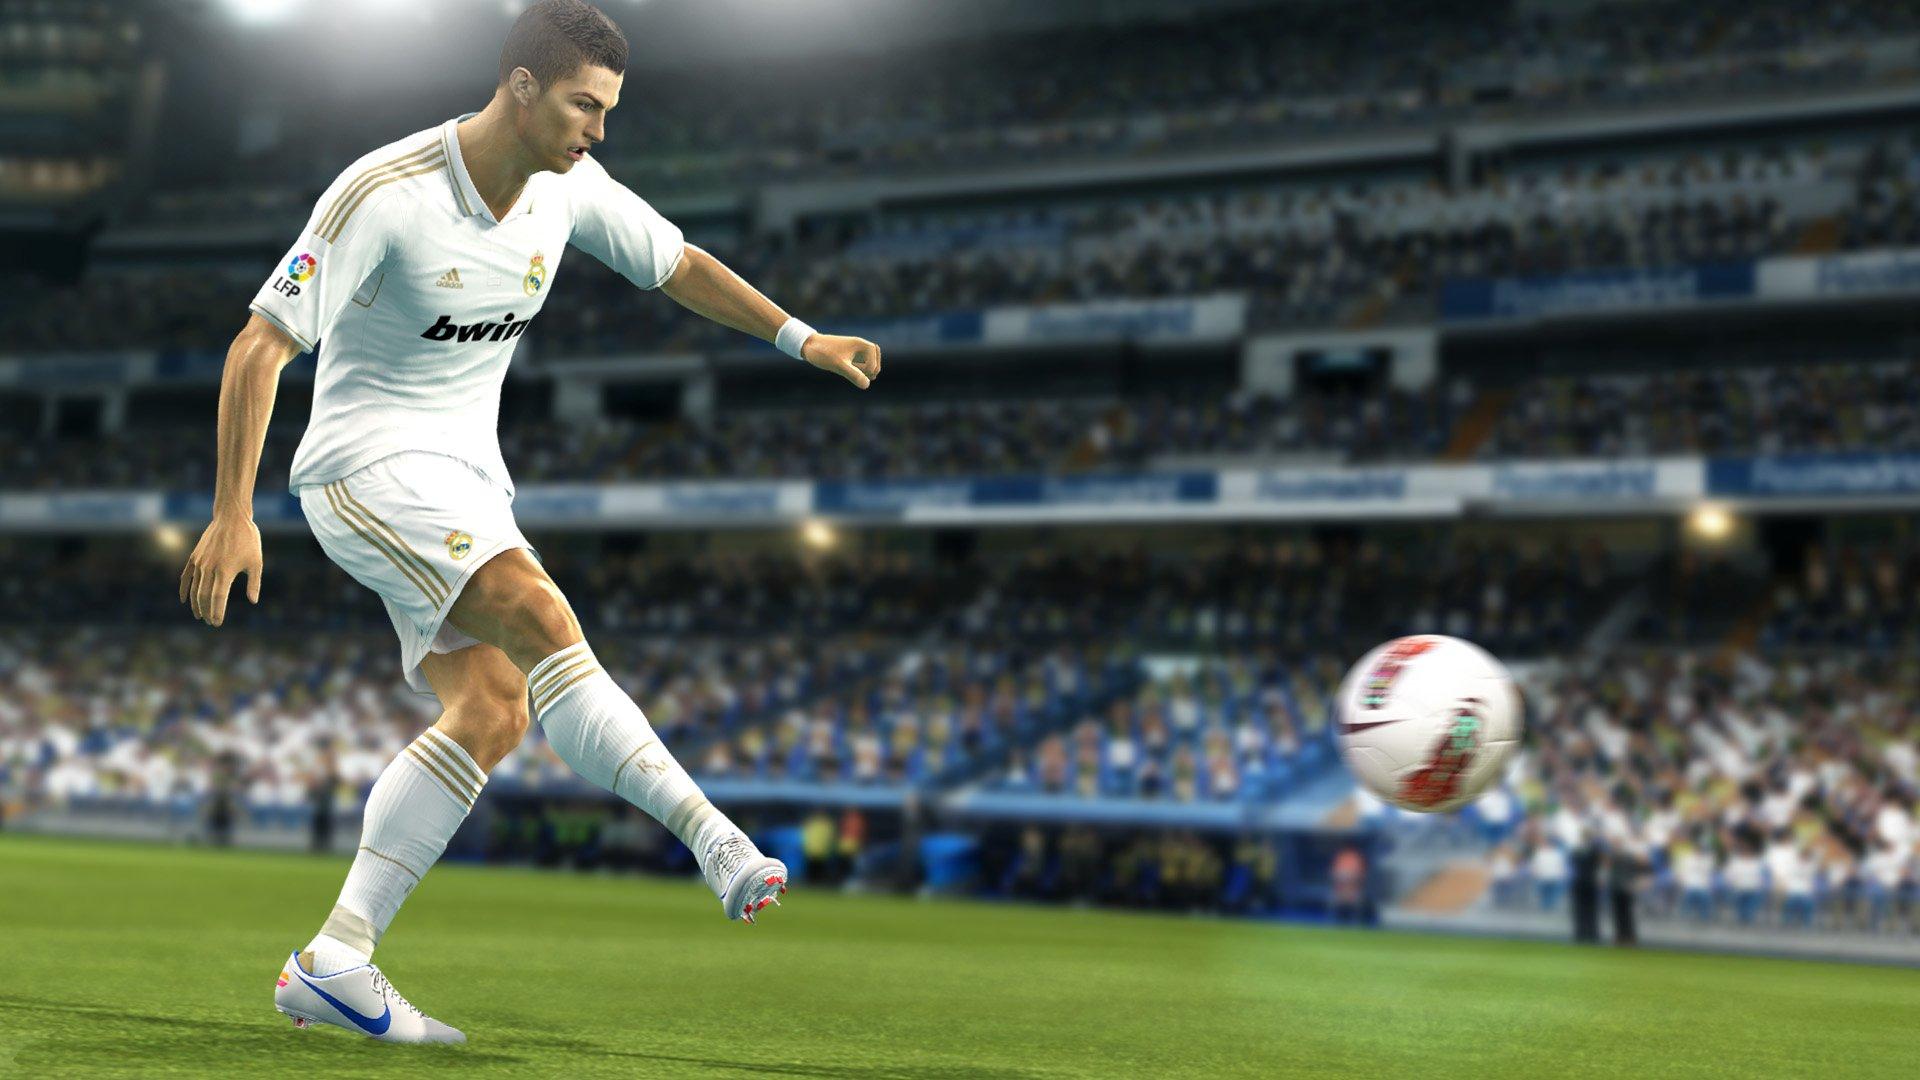 Jogo Pro Evolution Soccer 2013 / PES 2013 - Playstation 3 - Seminovo -  Games Guard